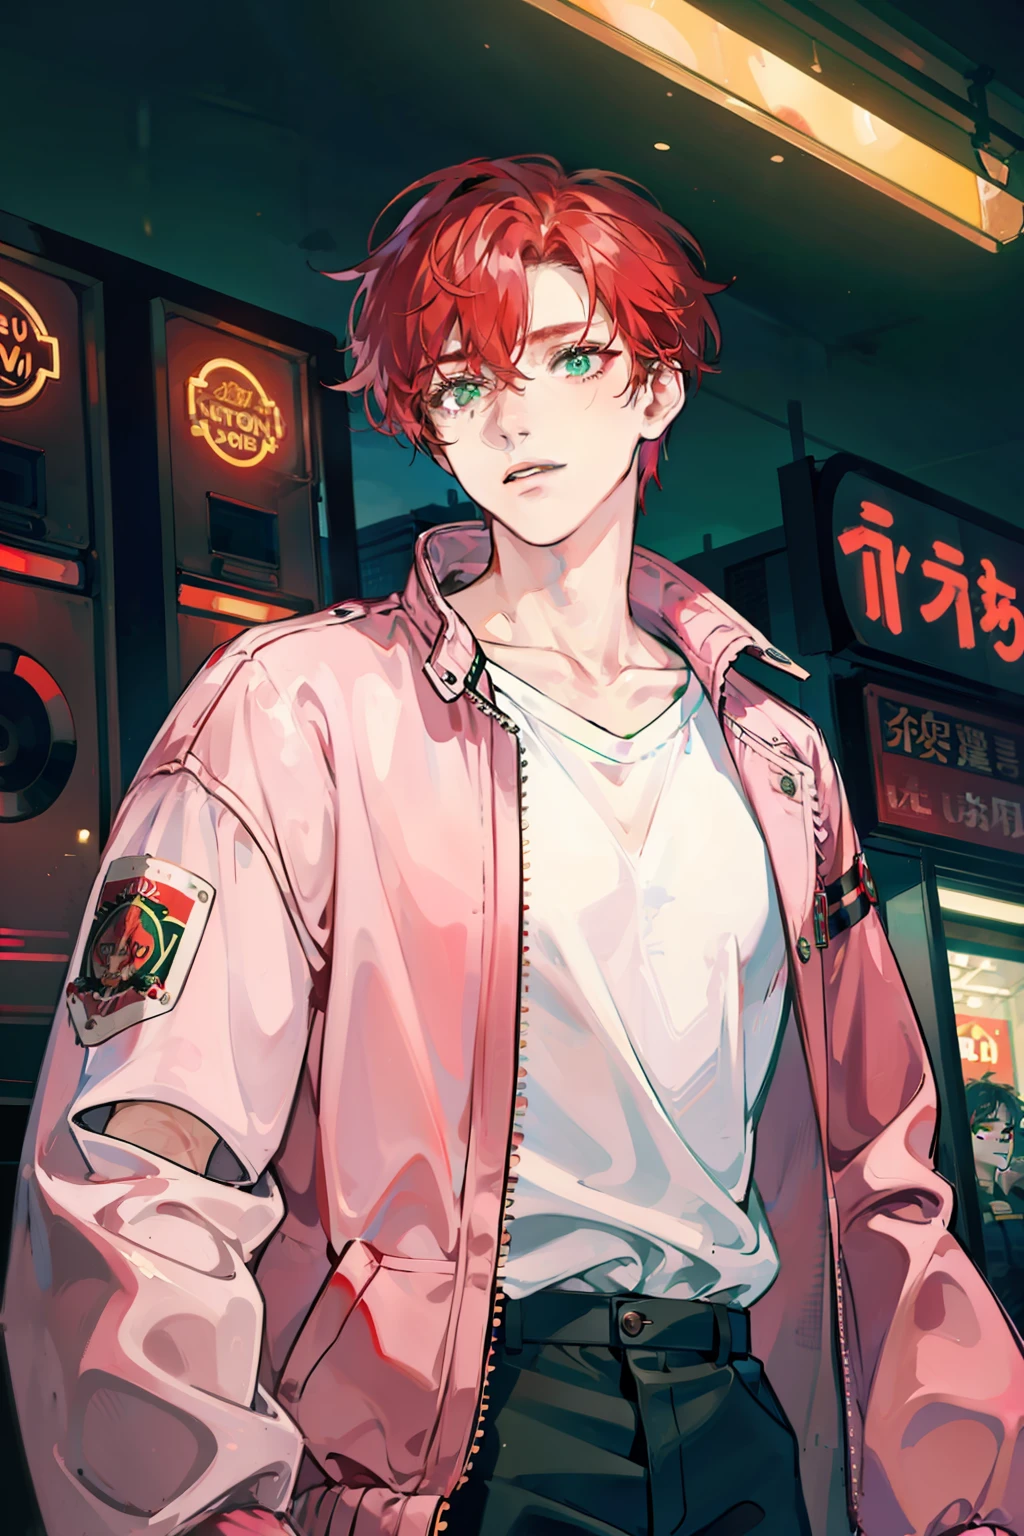 Un jeune homme aux cheveux rouge sang en désordre et aux yeux verts portant un blouson aviateur rose et blanc dans une arcade pleine de néons de Tokyo la nuit